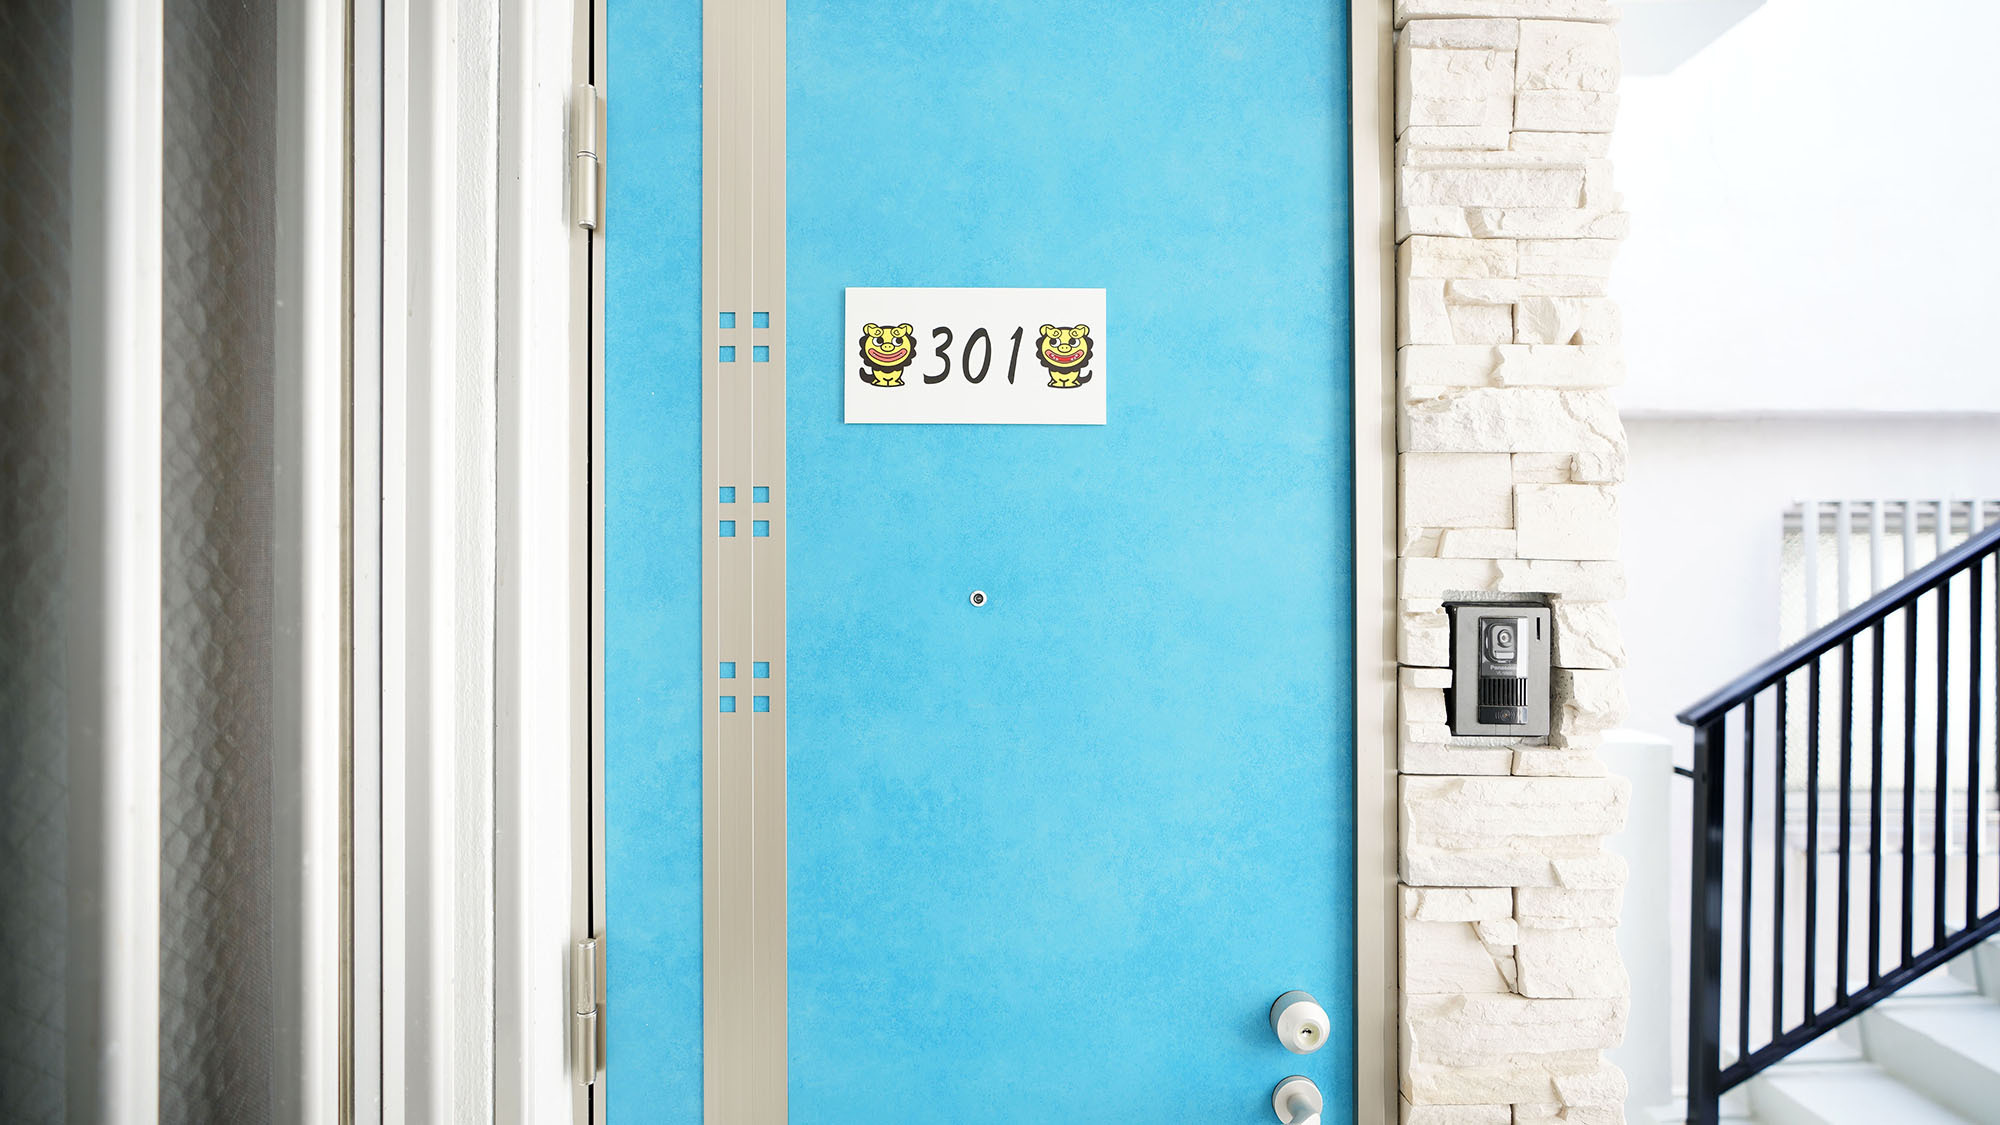 ・301号室：沖縄の海のようなブルーの扉が目印です